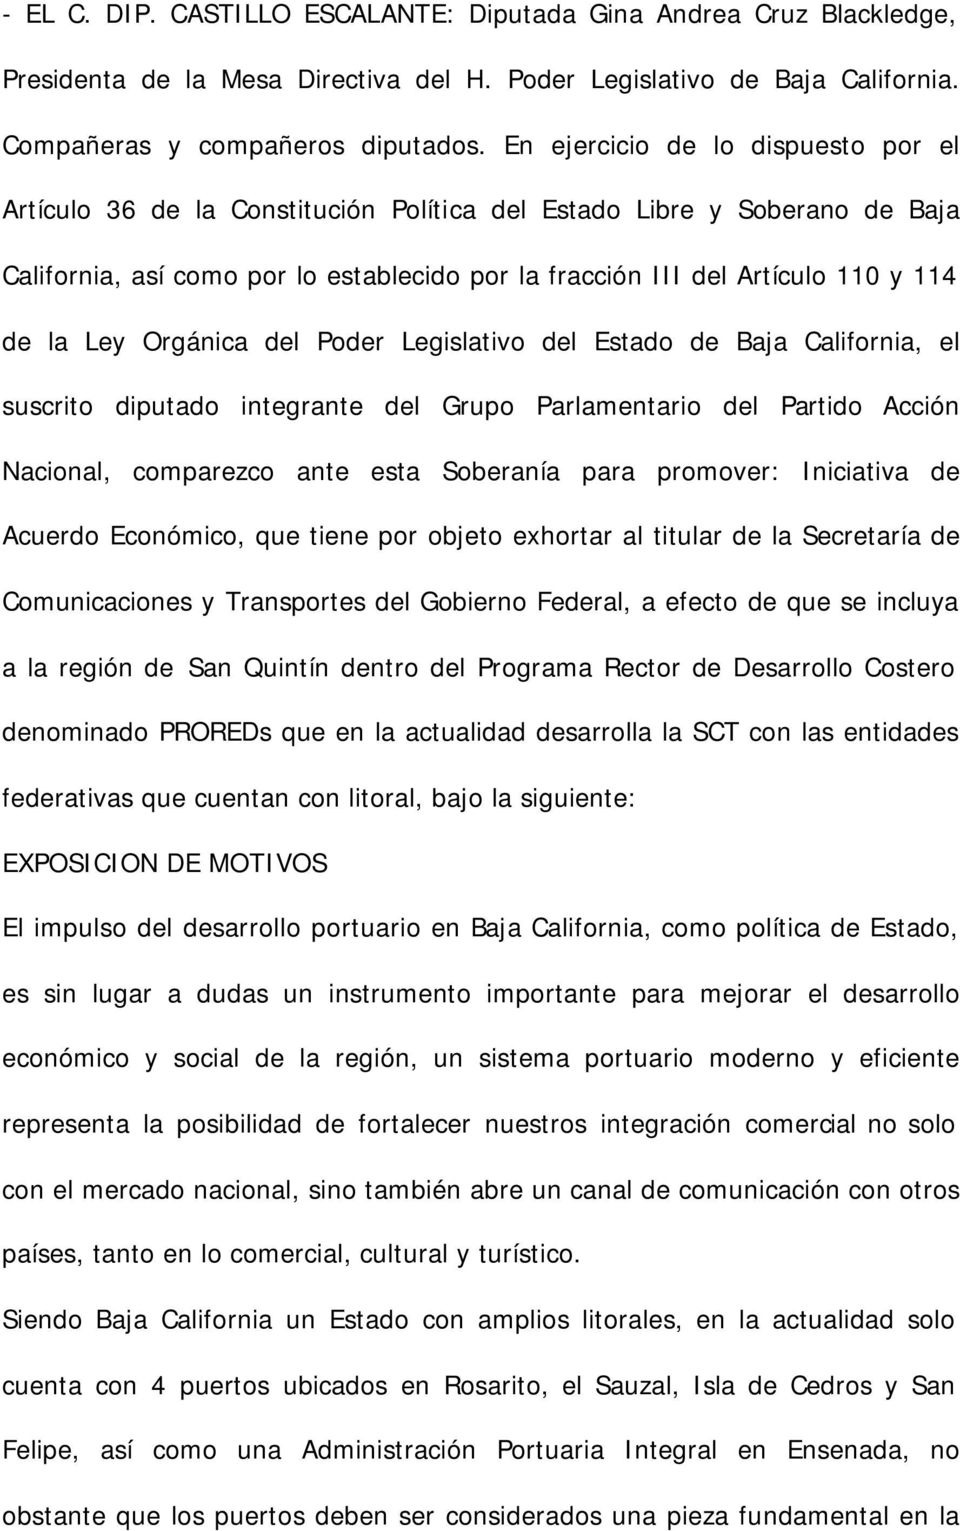 la Ley Orgánica del Poder Legislativo del Estado de Baja California, el suscrito diputado integrante del Grupo Parlamentario del Partido Acción Nacional, comparezco ante esta Soberanía para promover: